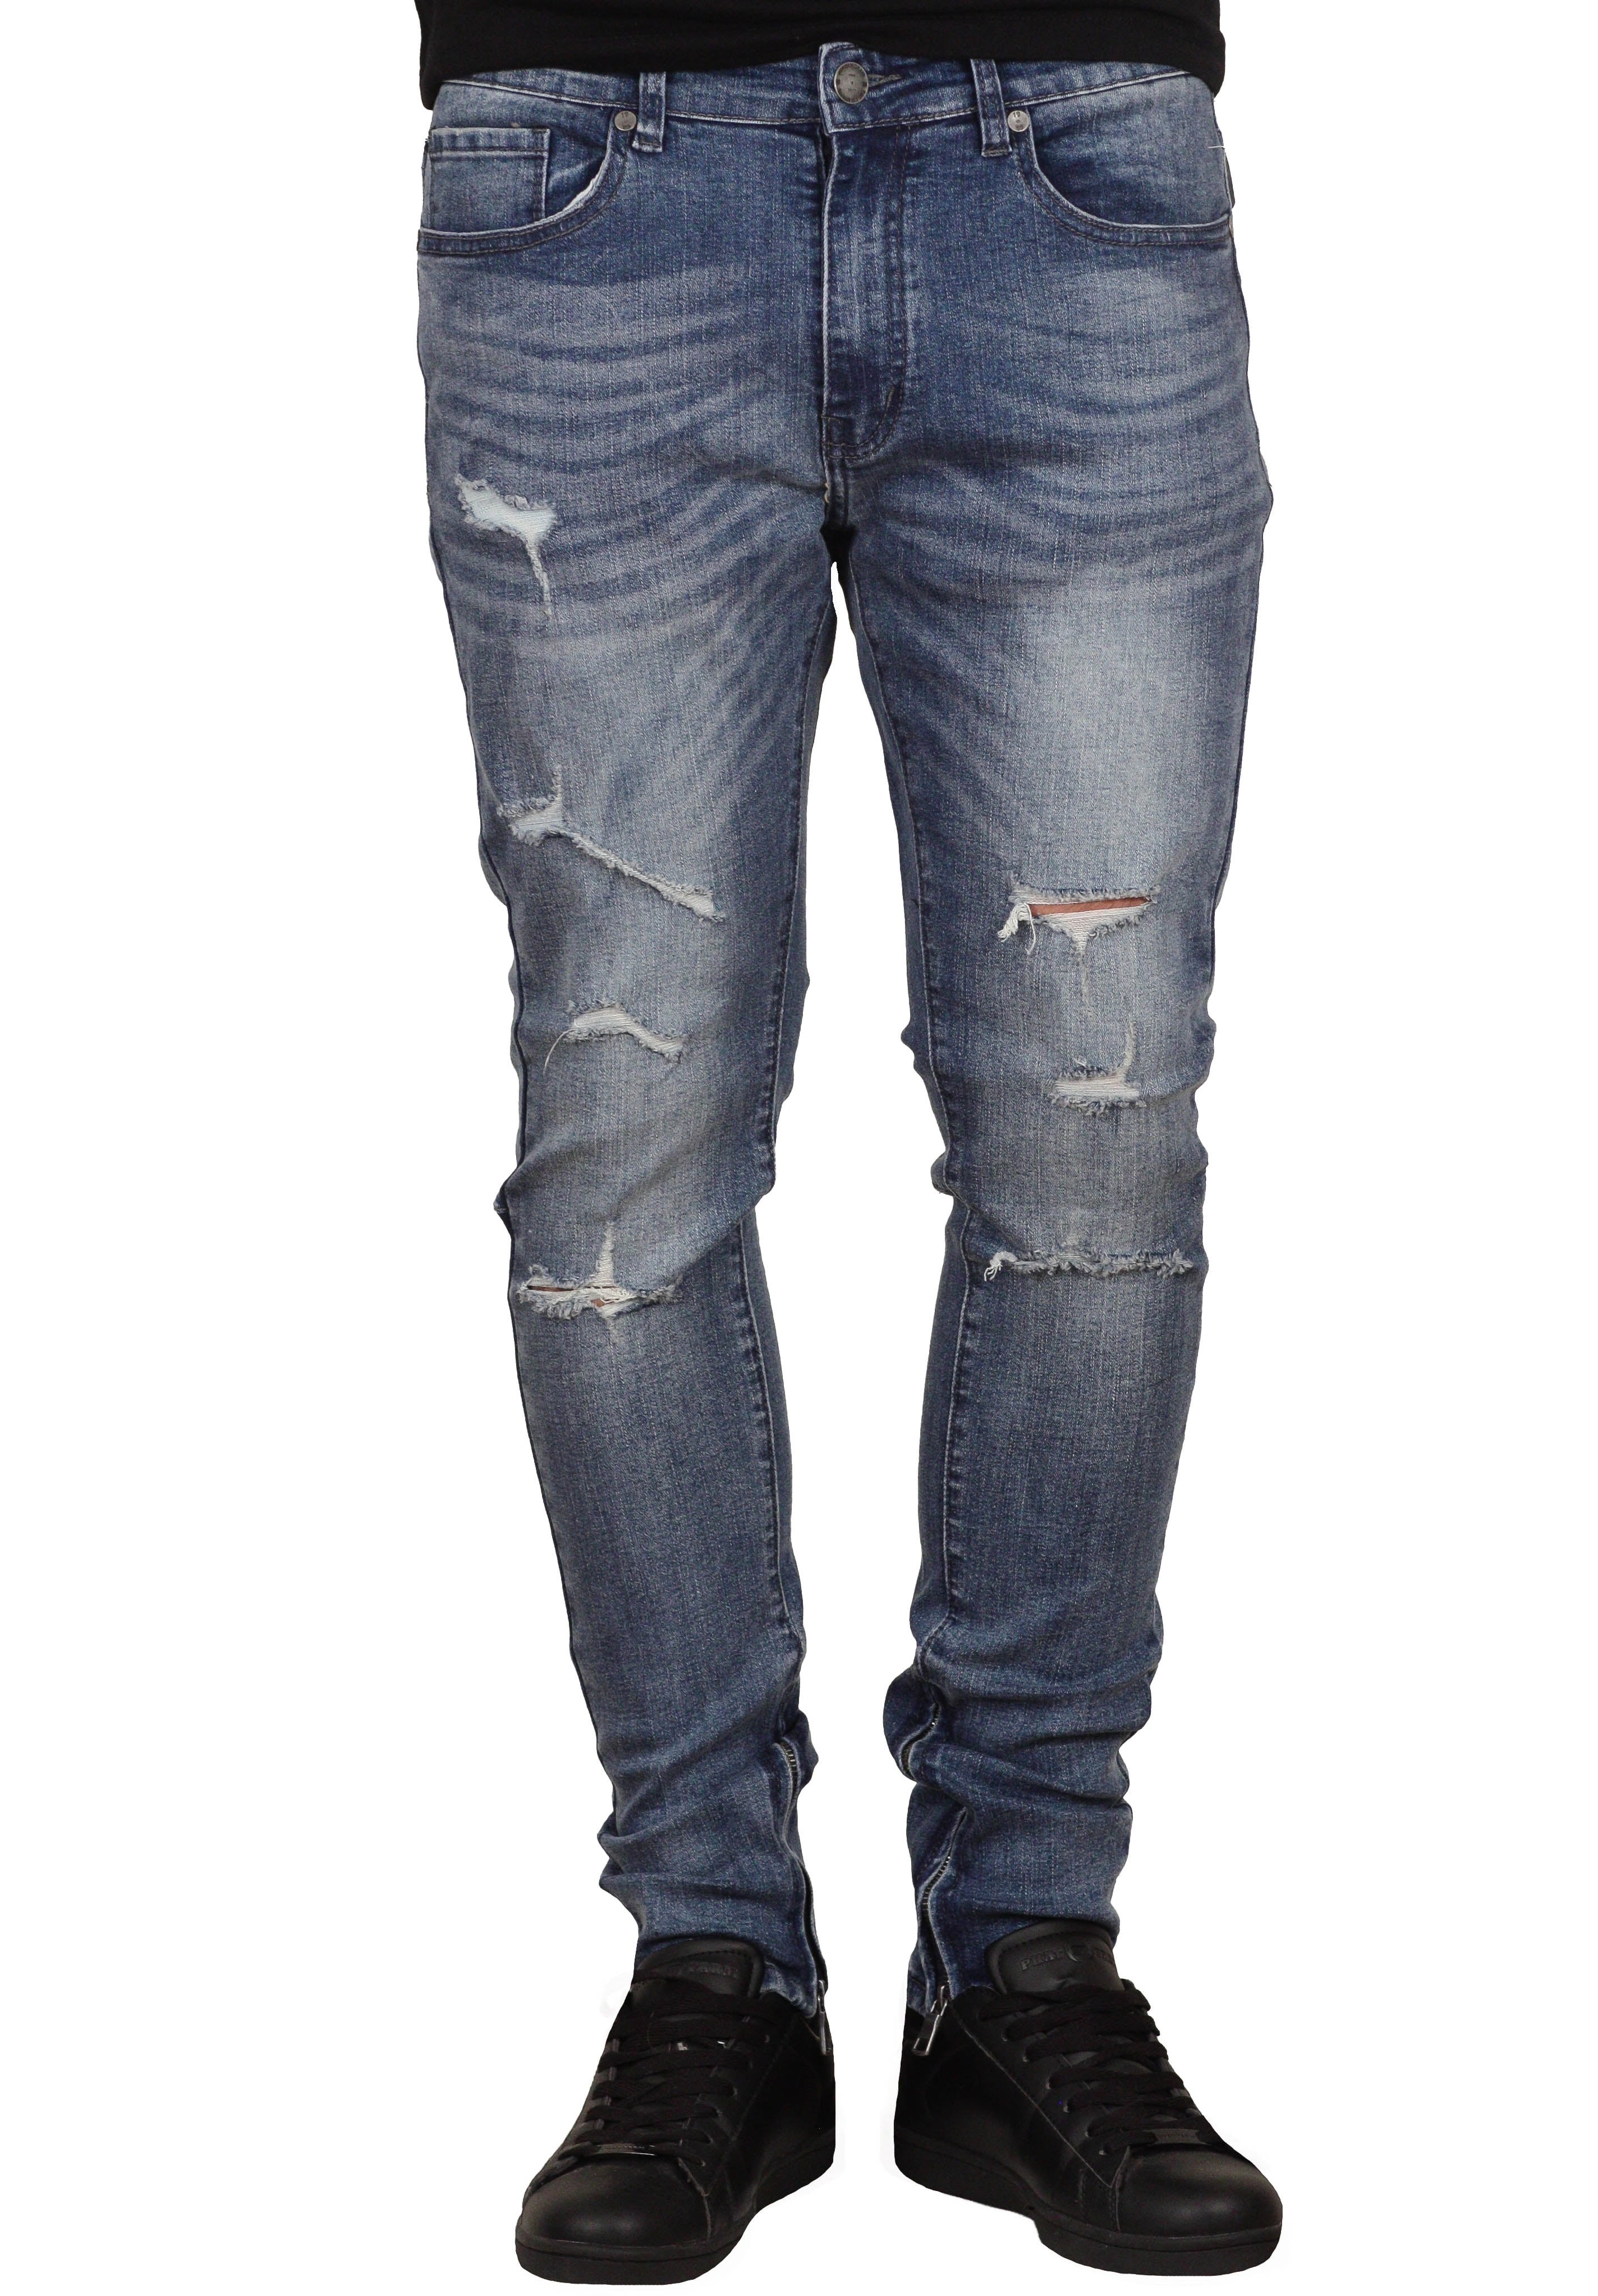 jordan craig skinny jeans